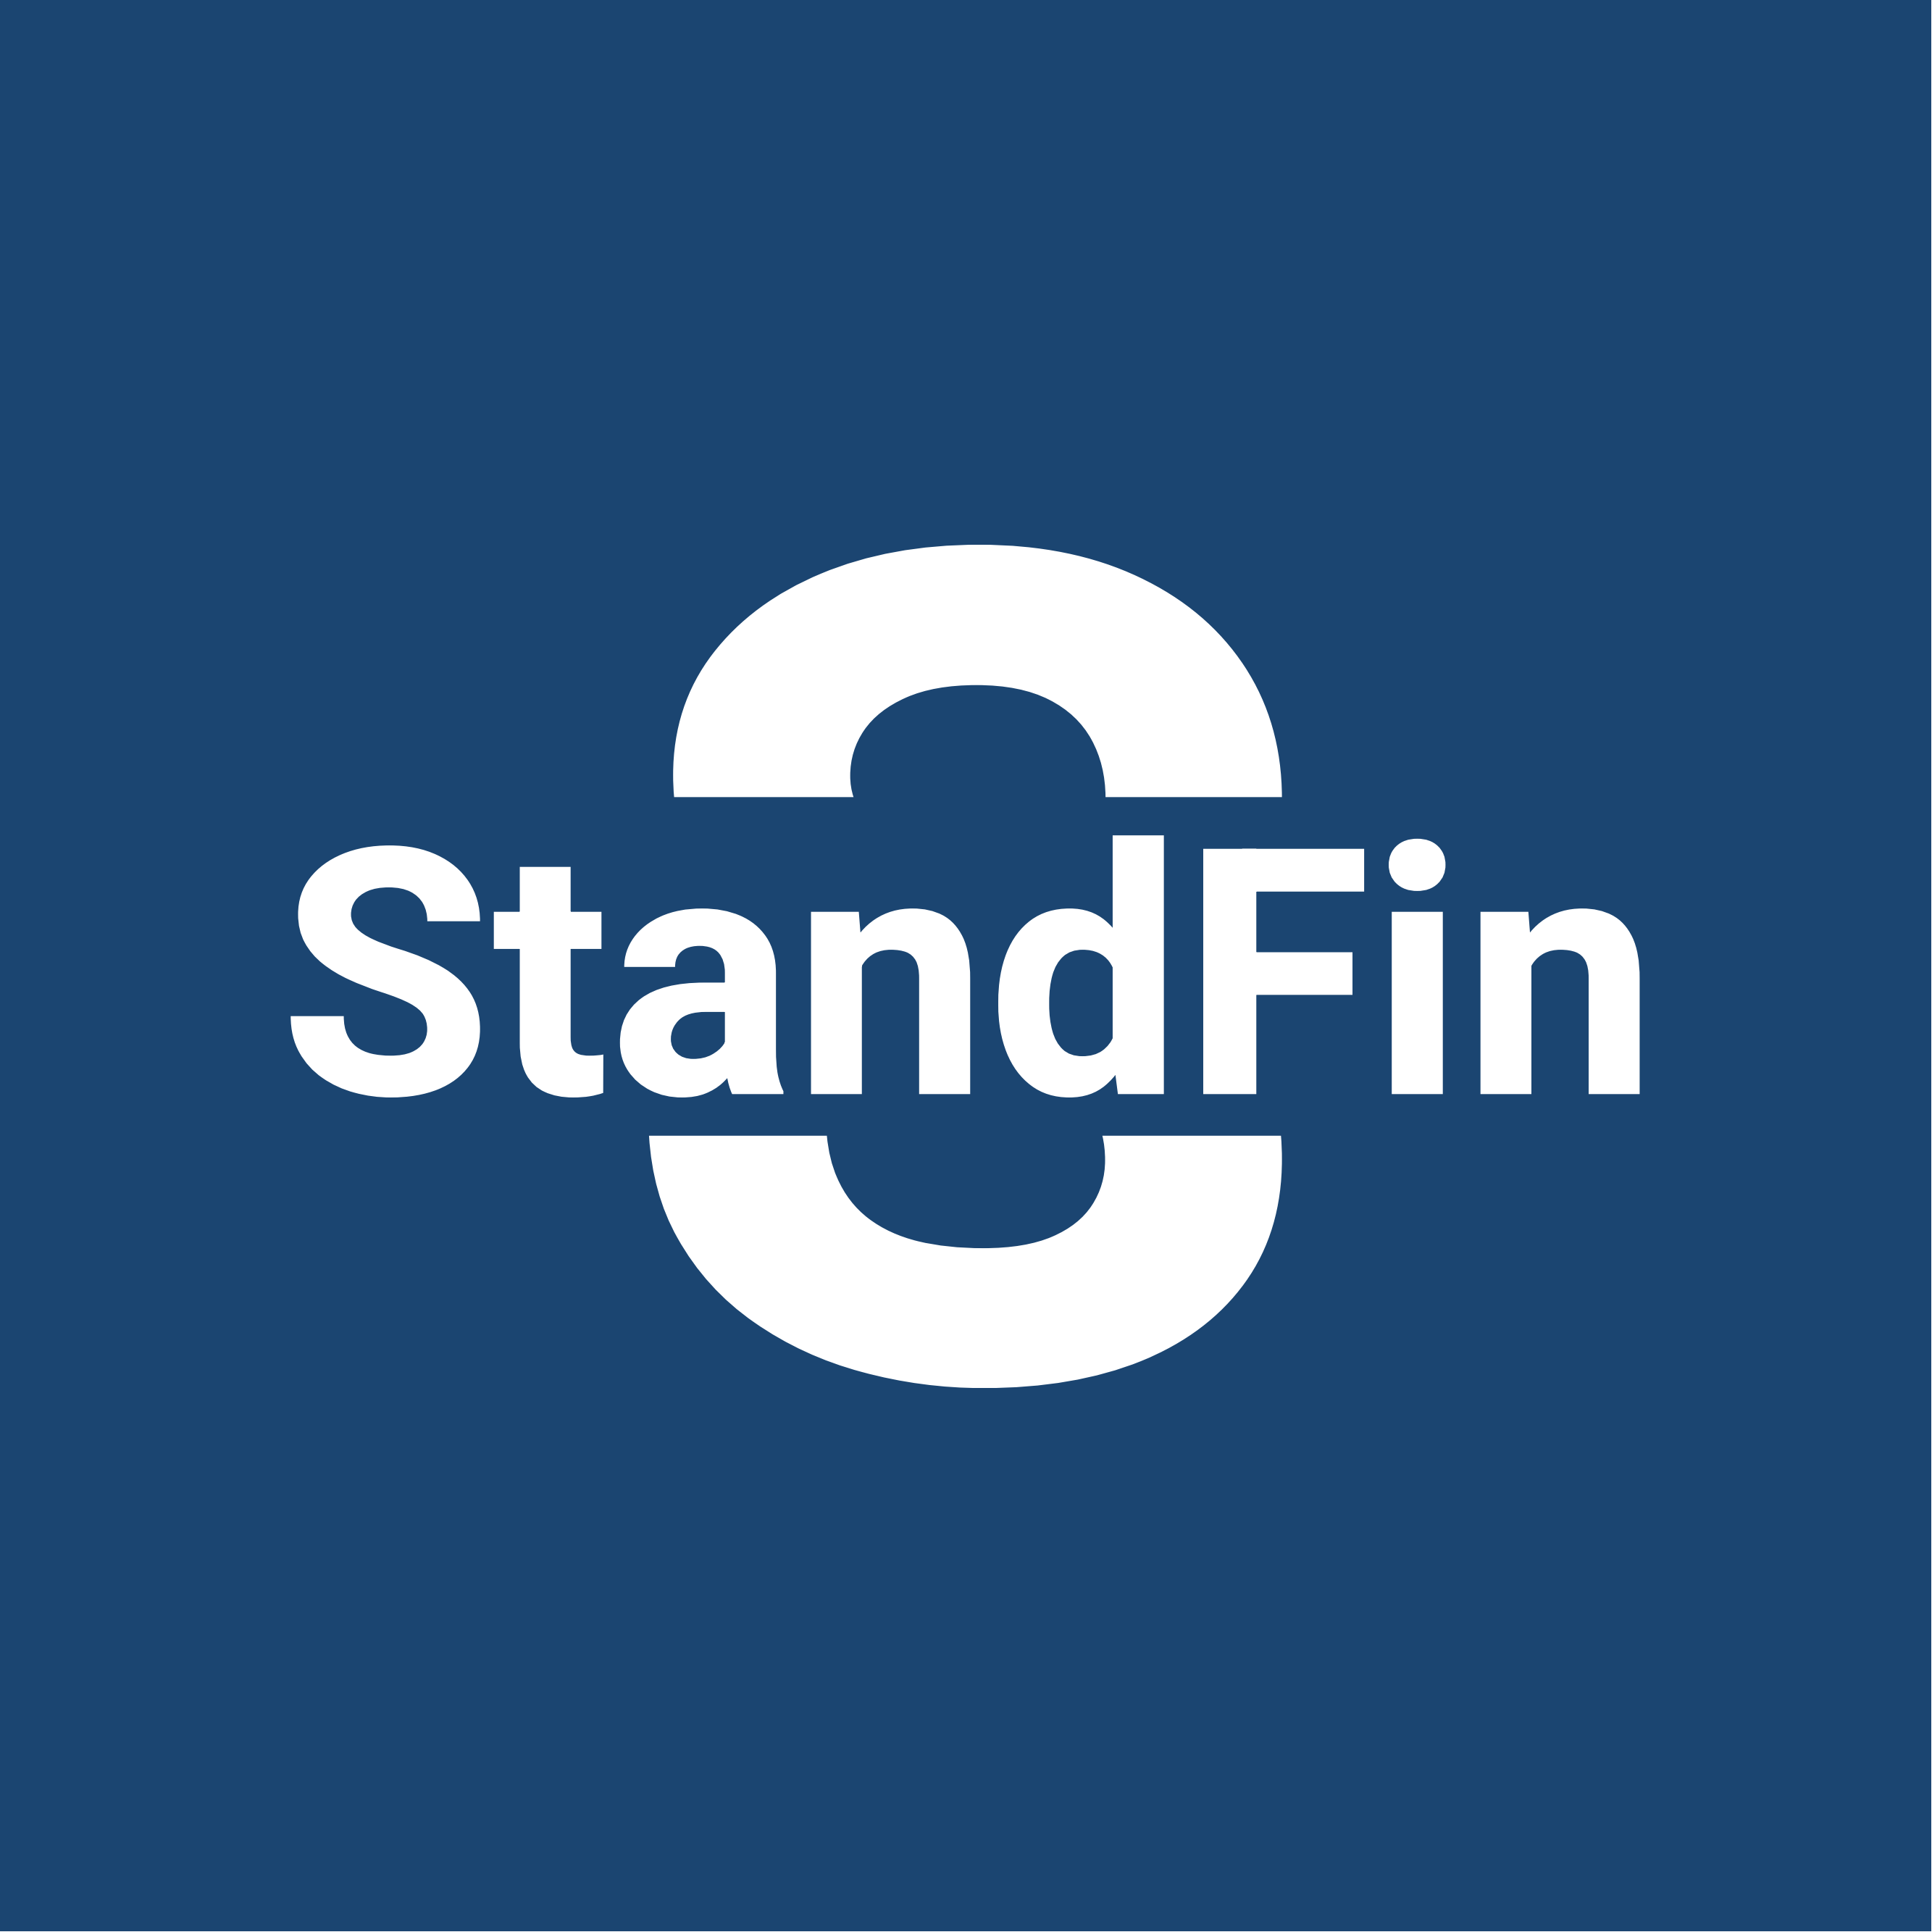 Standard Finance Ltd in Elioplus